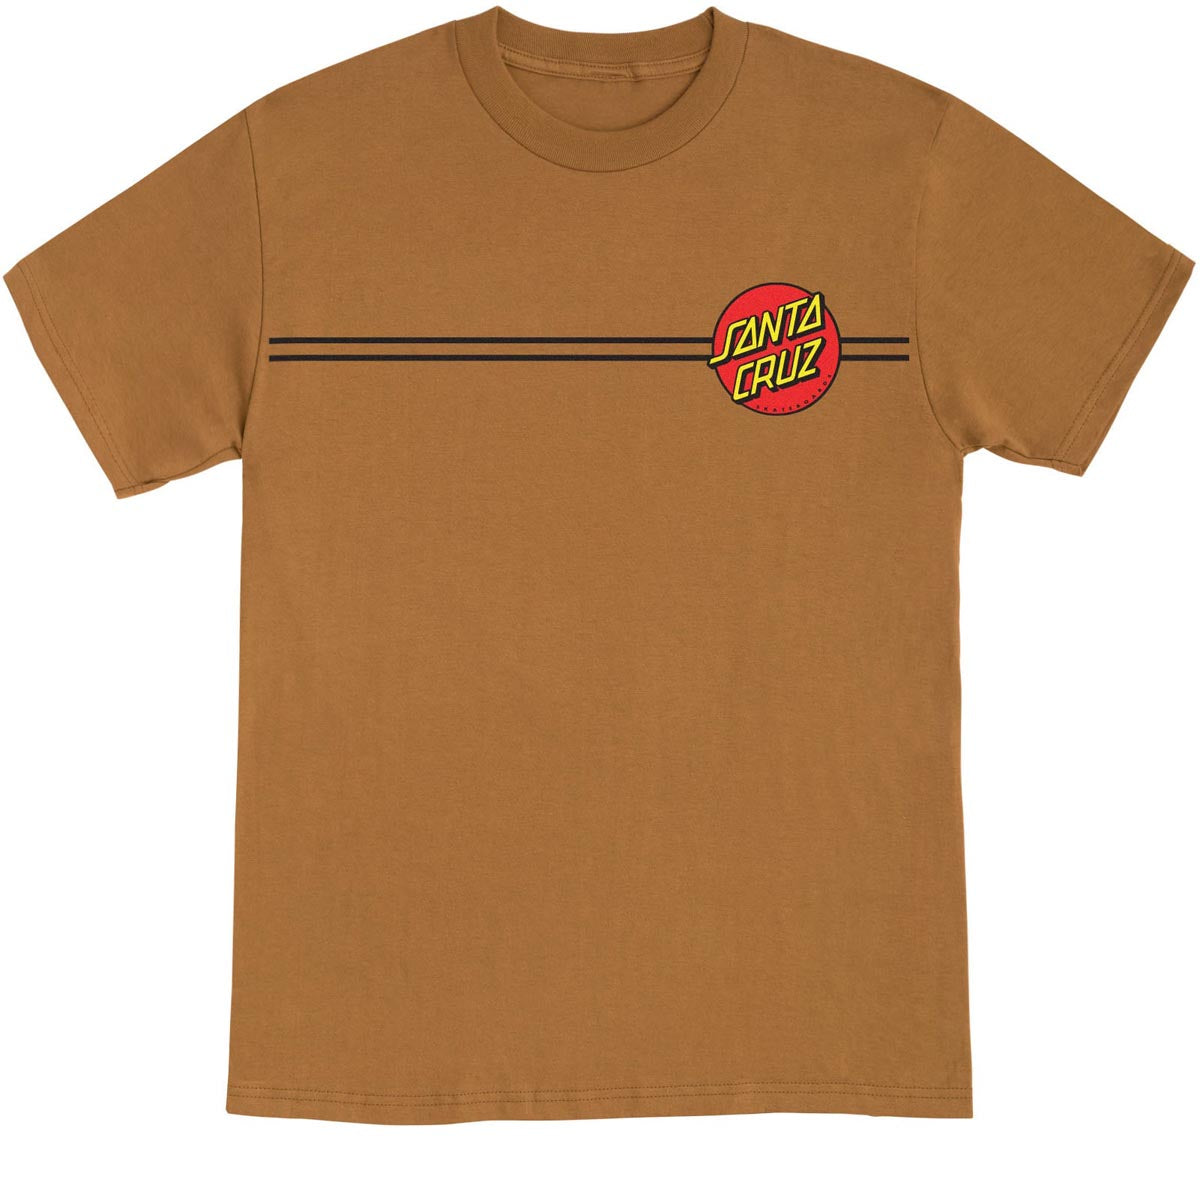 Santa Cruz Classic Dot T-Shirt - Brown Sugar image 1